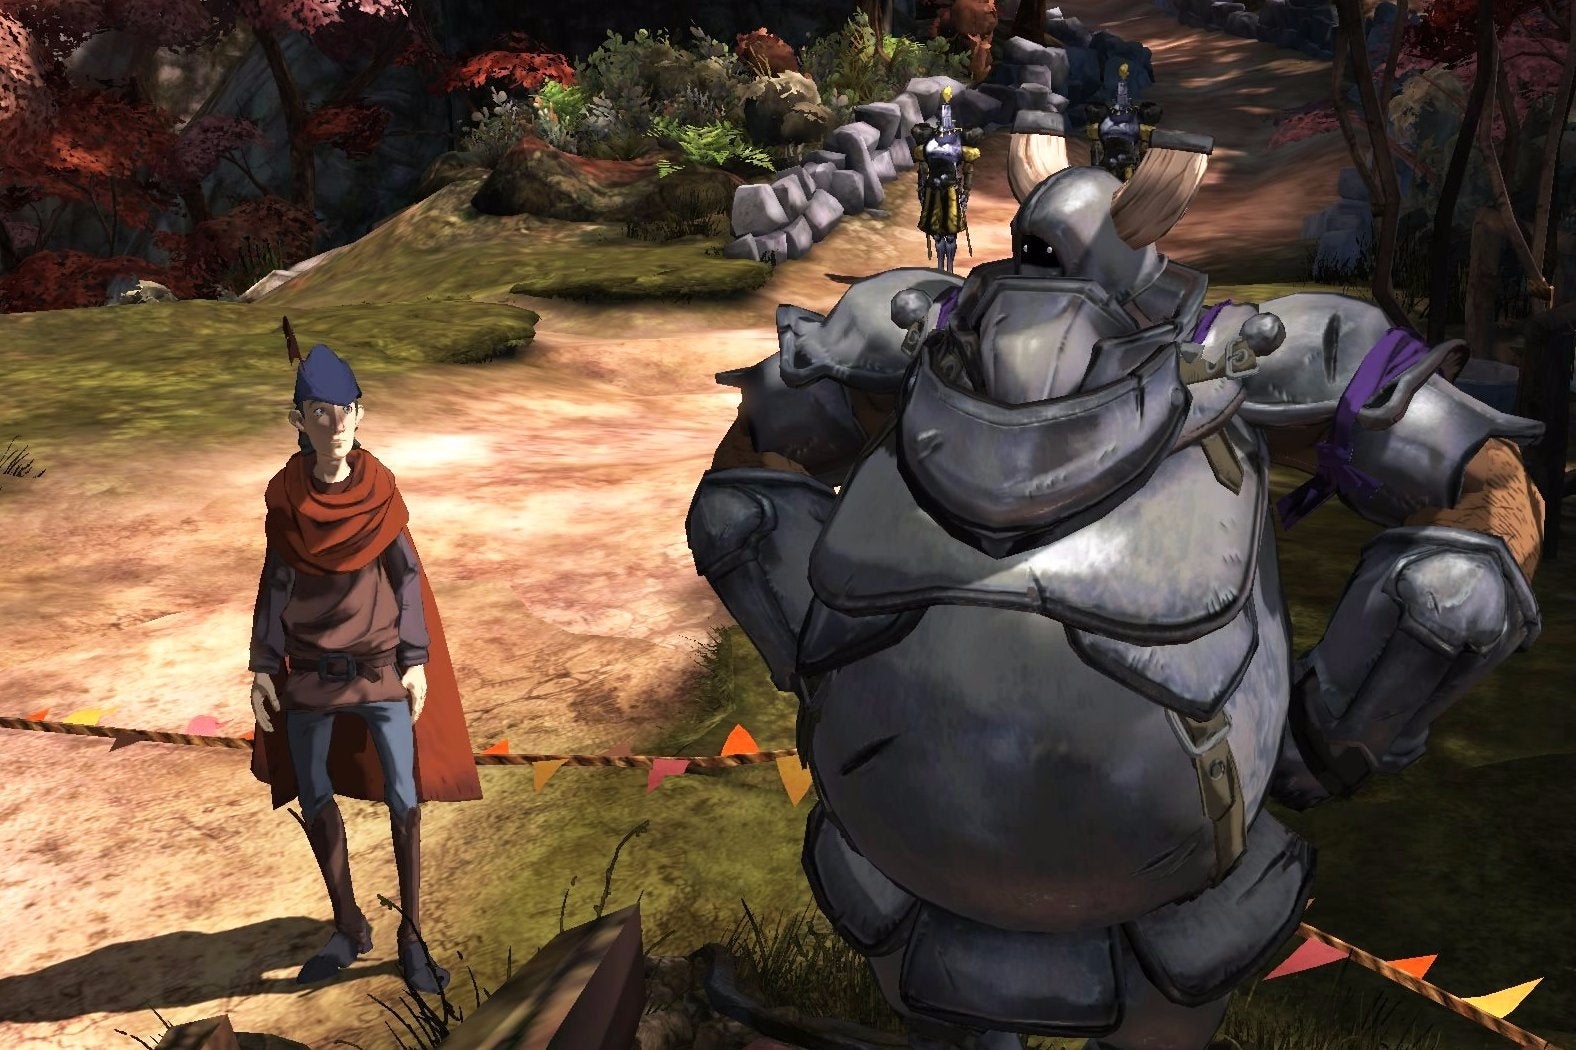 Immagine di King's Quest: Chapter 1 è scaricabile gratuitamente su Steam